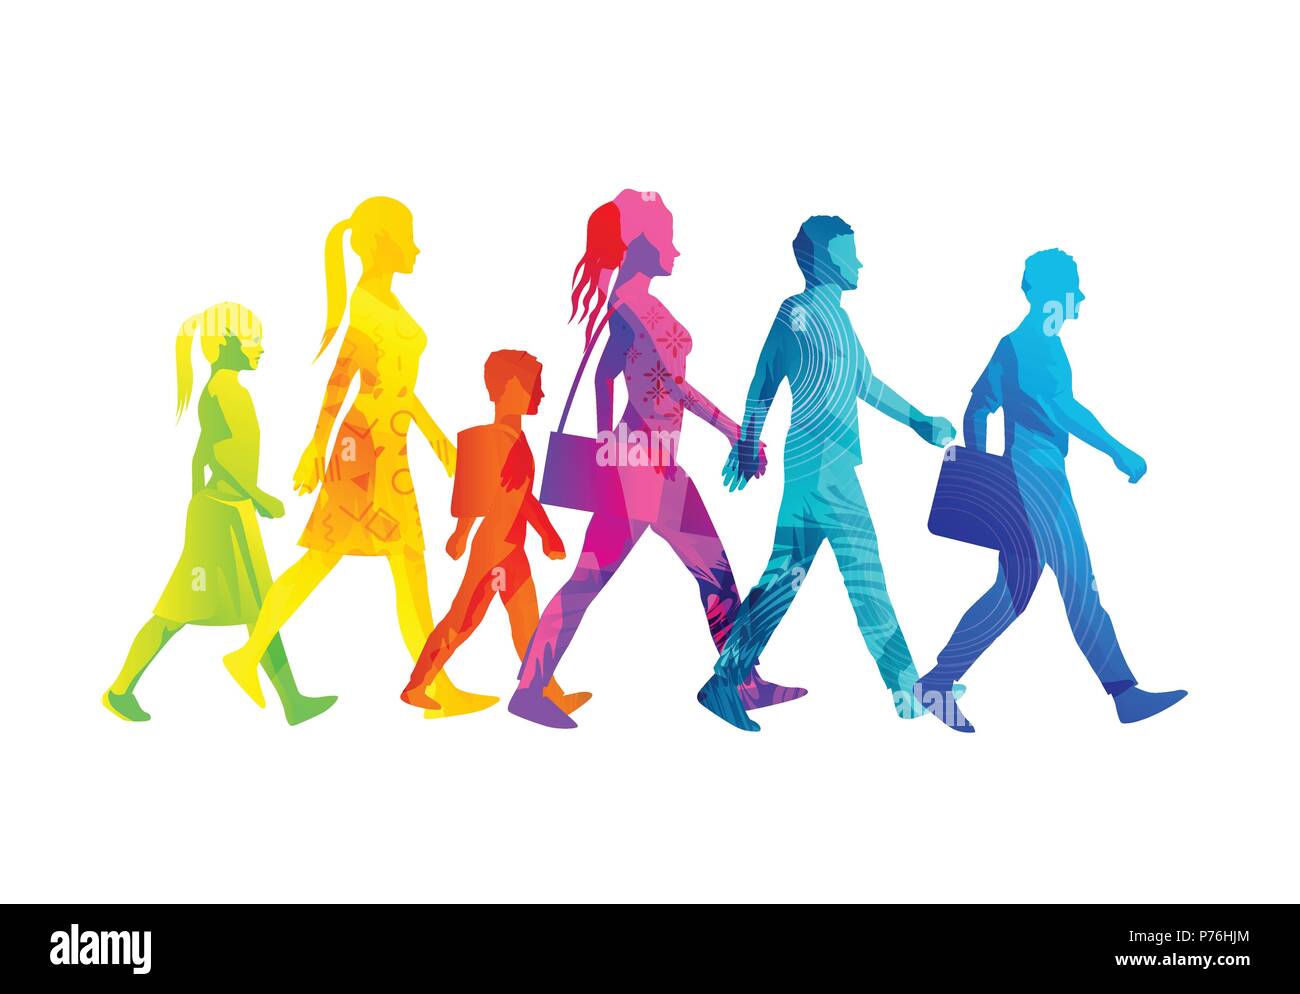 Une sélection de personnes marche silhouettes y compris les enfants, les femmes et les hommes. Illustration vecteur de texture colorée. Illustration de Vecteur